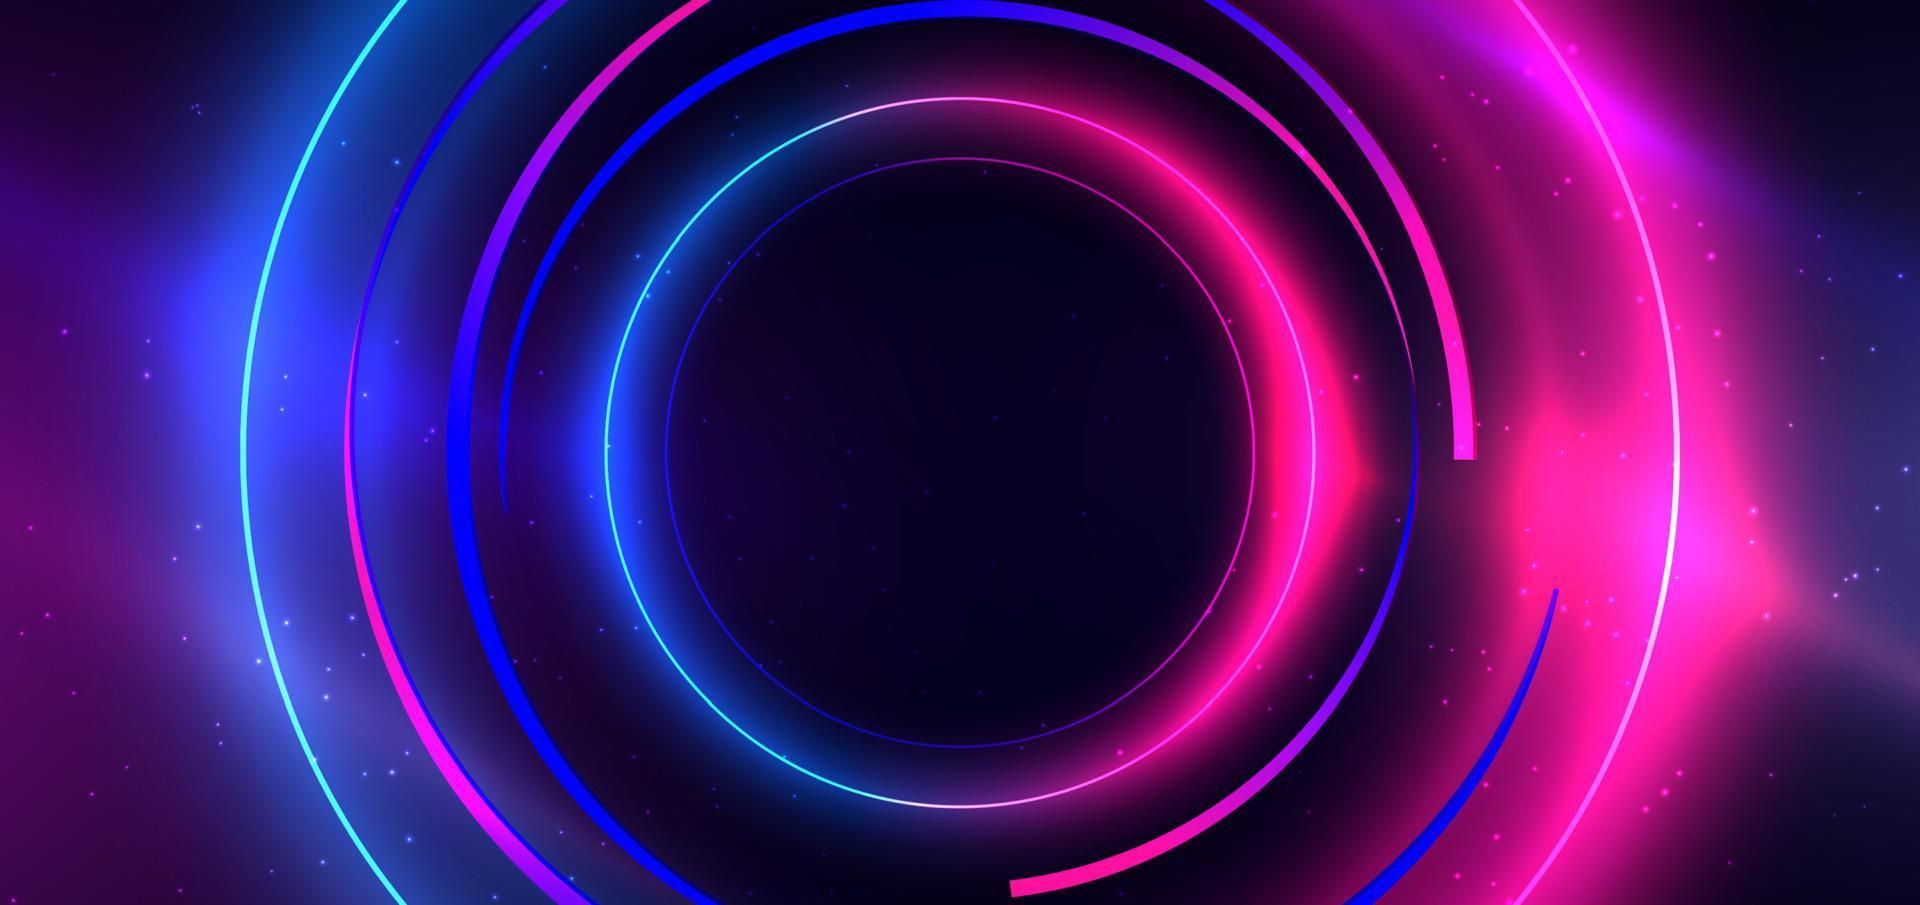 technologie abstraite cercle néon futuriste brillant lignes lumineuses bleues et roses avec effet de flou de mouvement de vitesse sur fond bleu foncé. vecteur